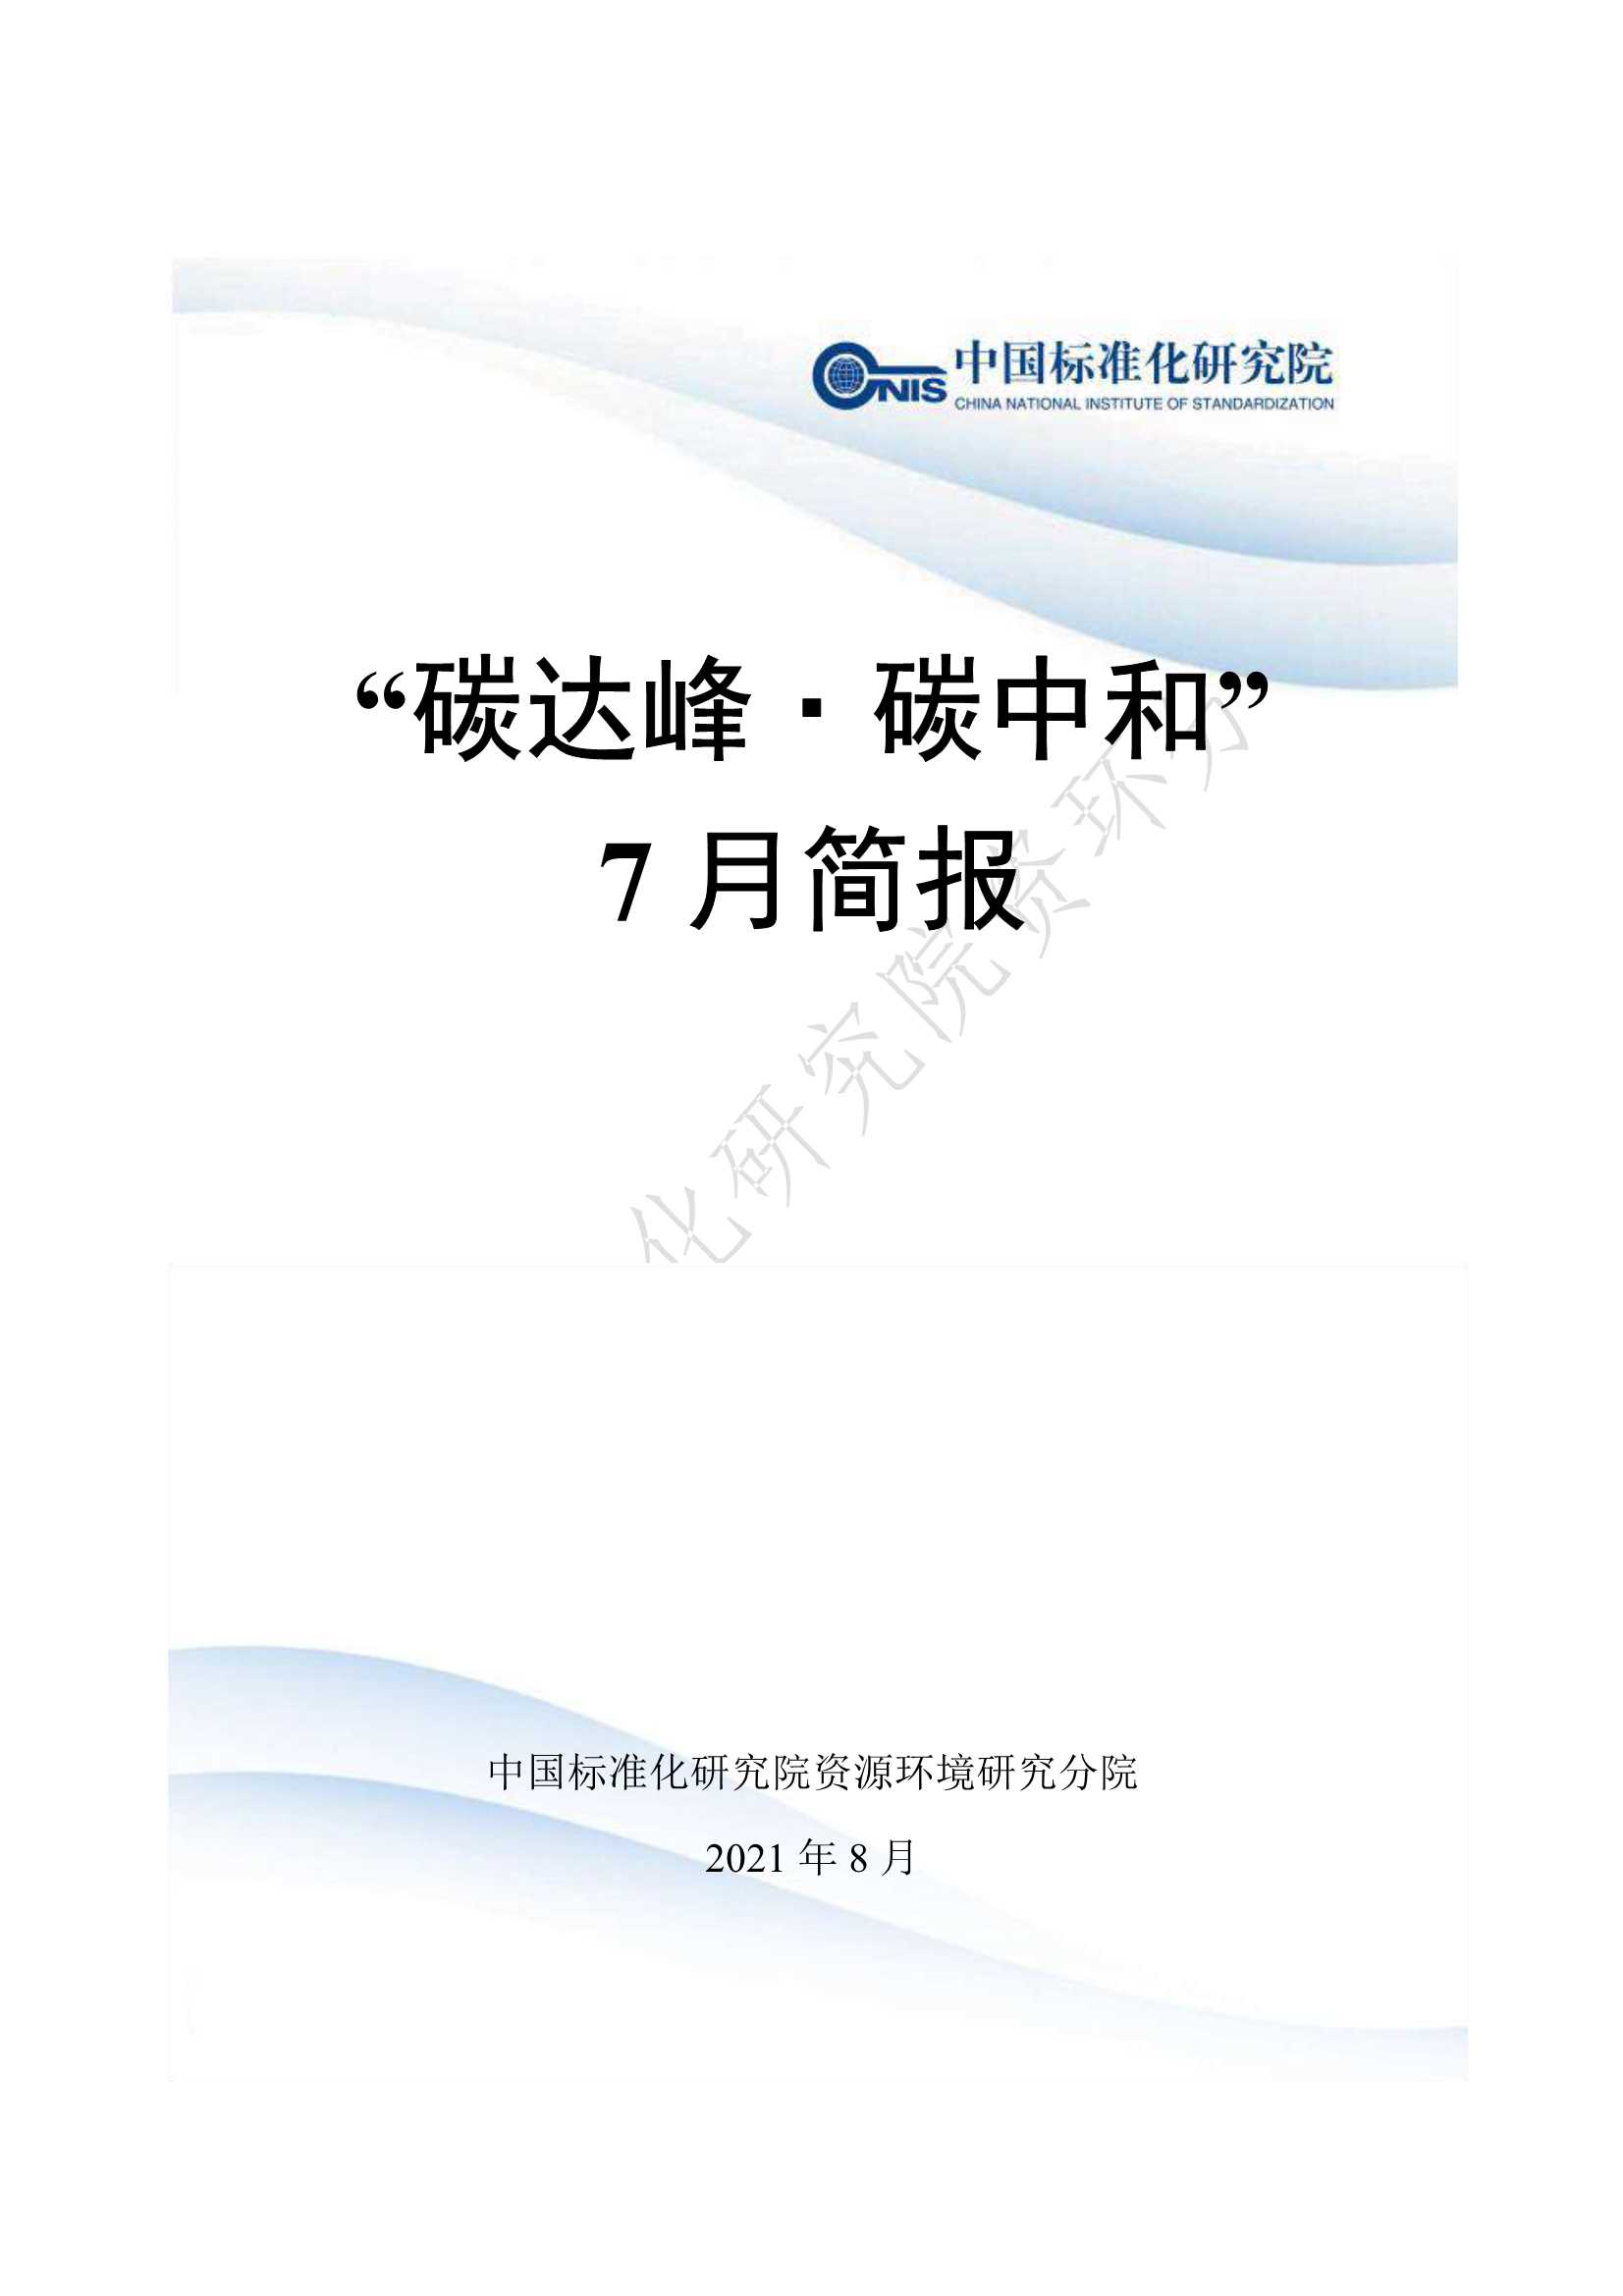 中国标准化研究院-碳达峰 碳中和 2021年7月简报-2021.08-430页